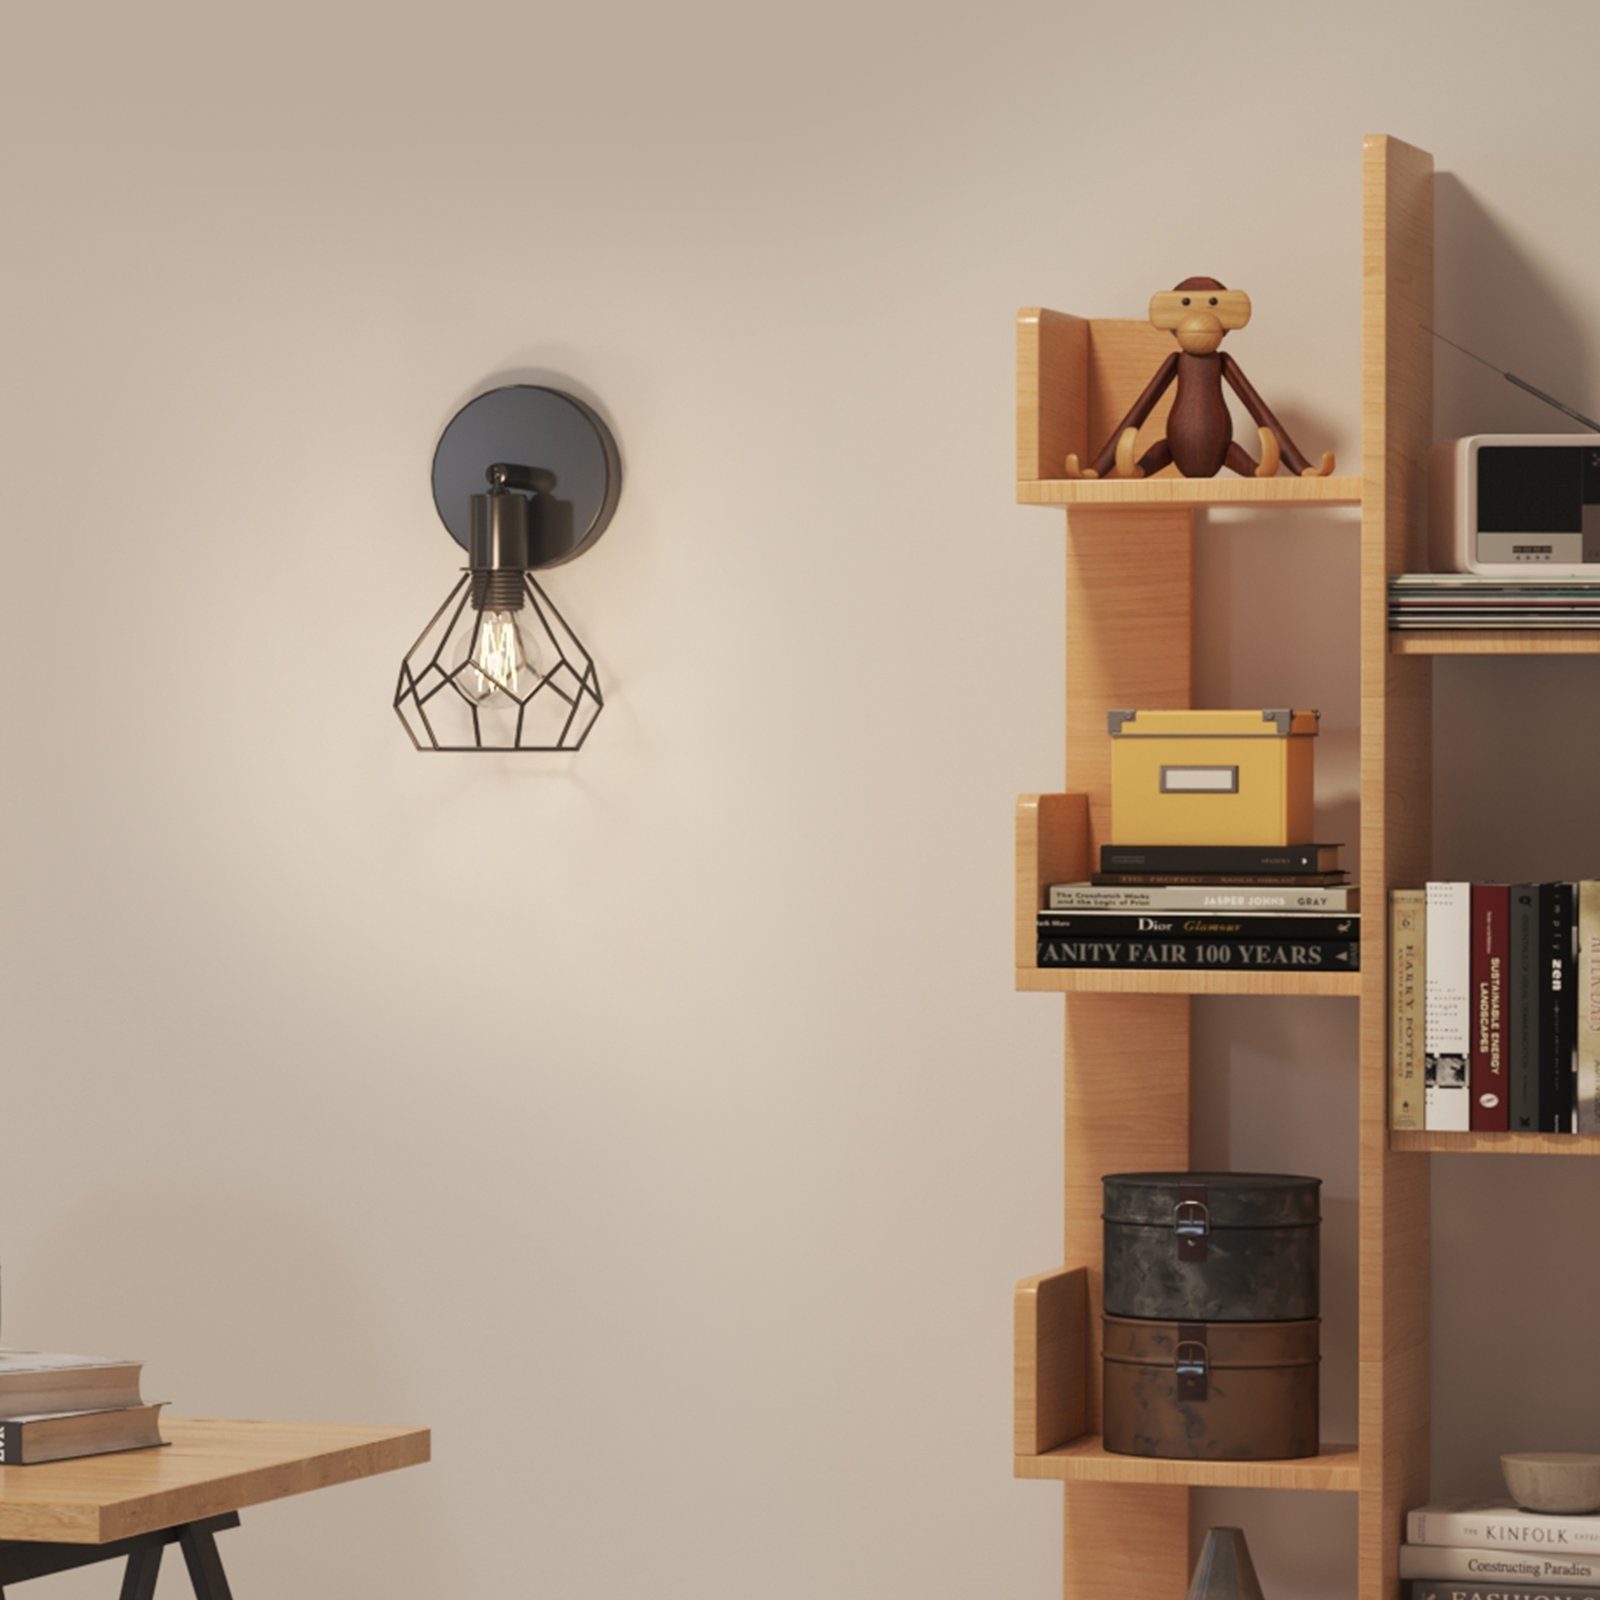 Wandleuchte Wohnzimmerlampe Flurlampe, Retro Industrial Wandleuchte Fassung(Glühbirne nicht E14 EMKE Wandleuchte enthalten)